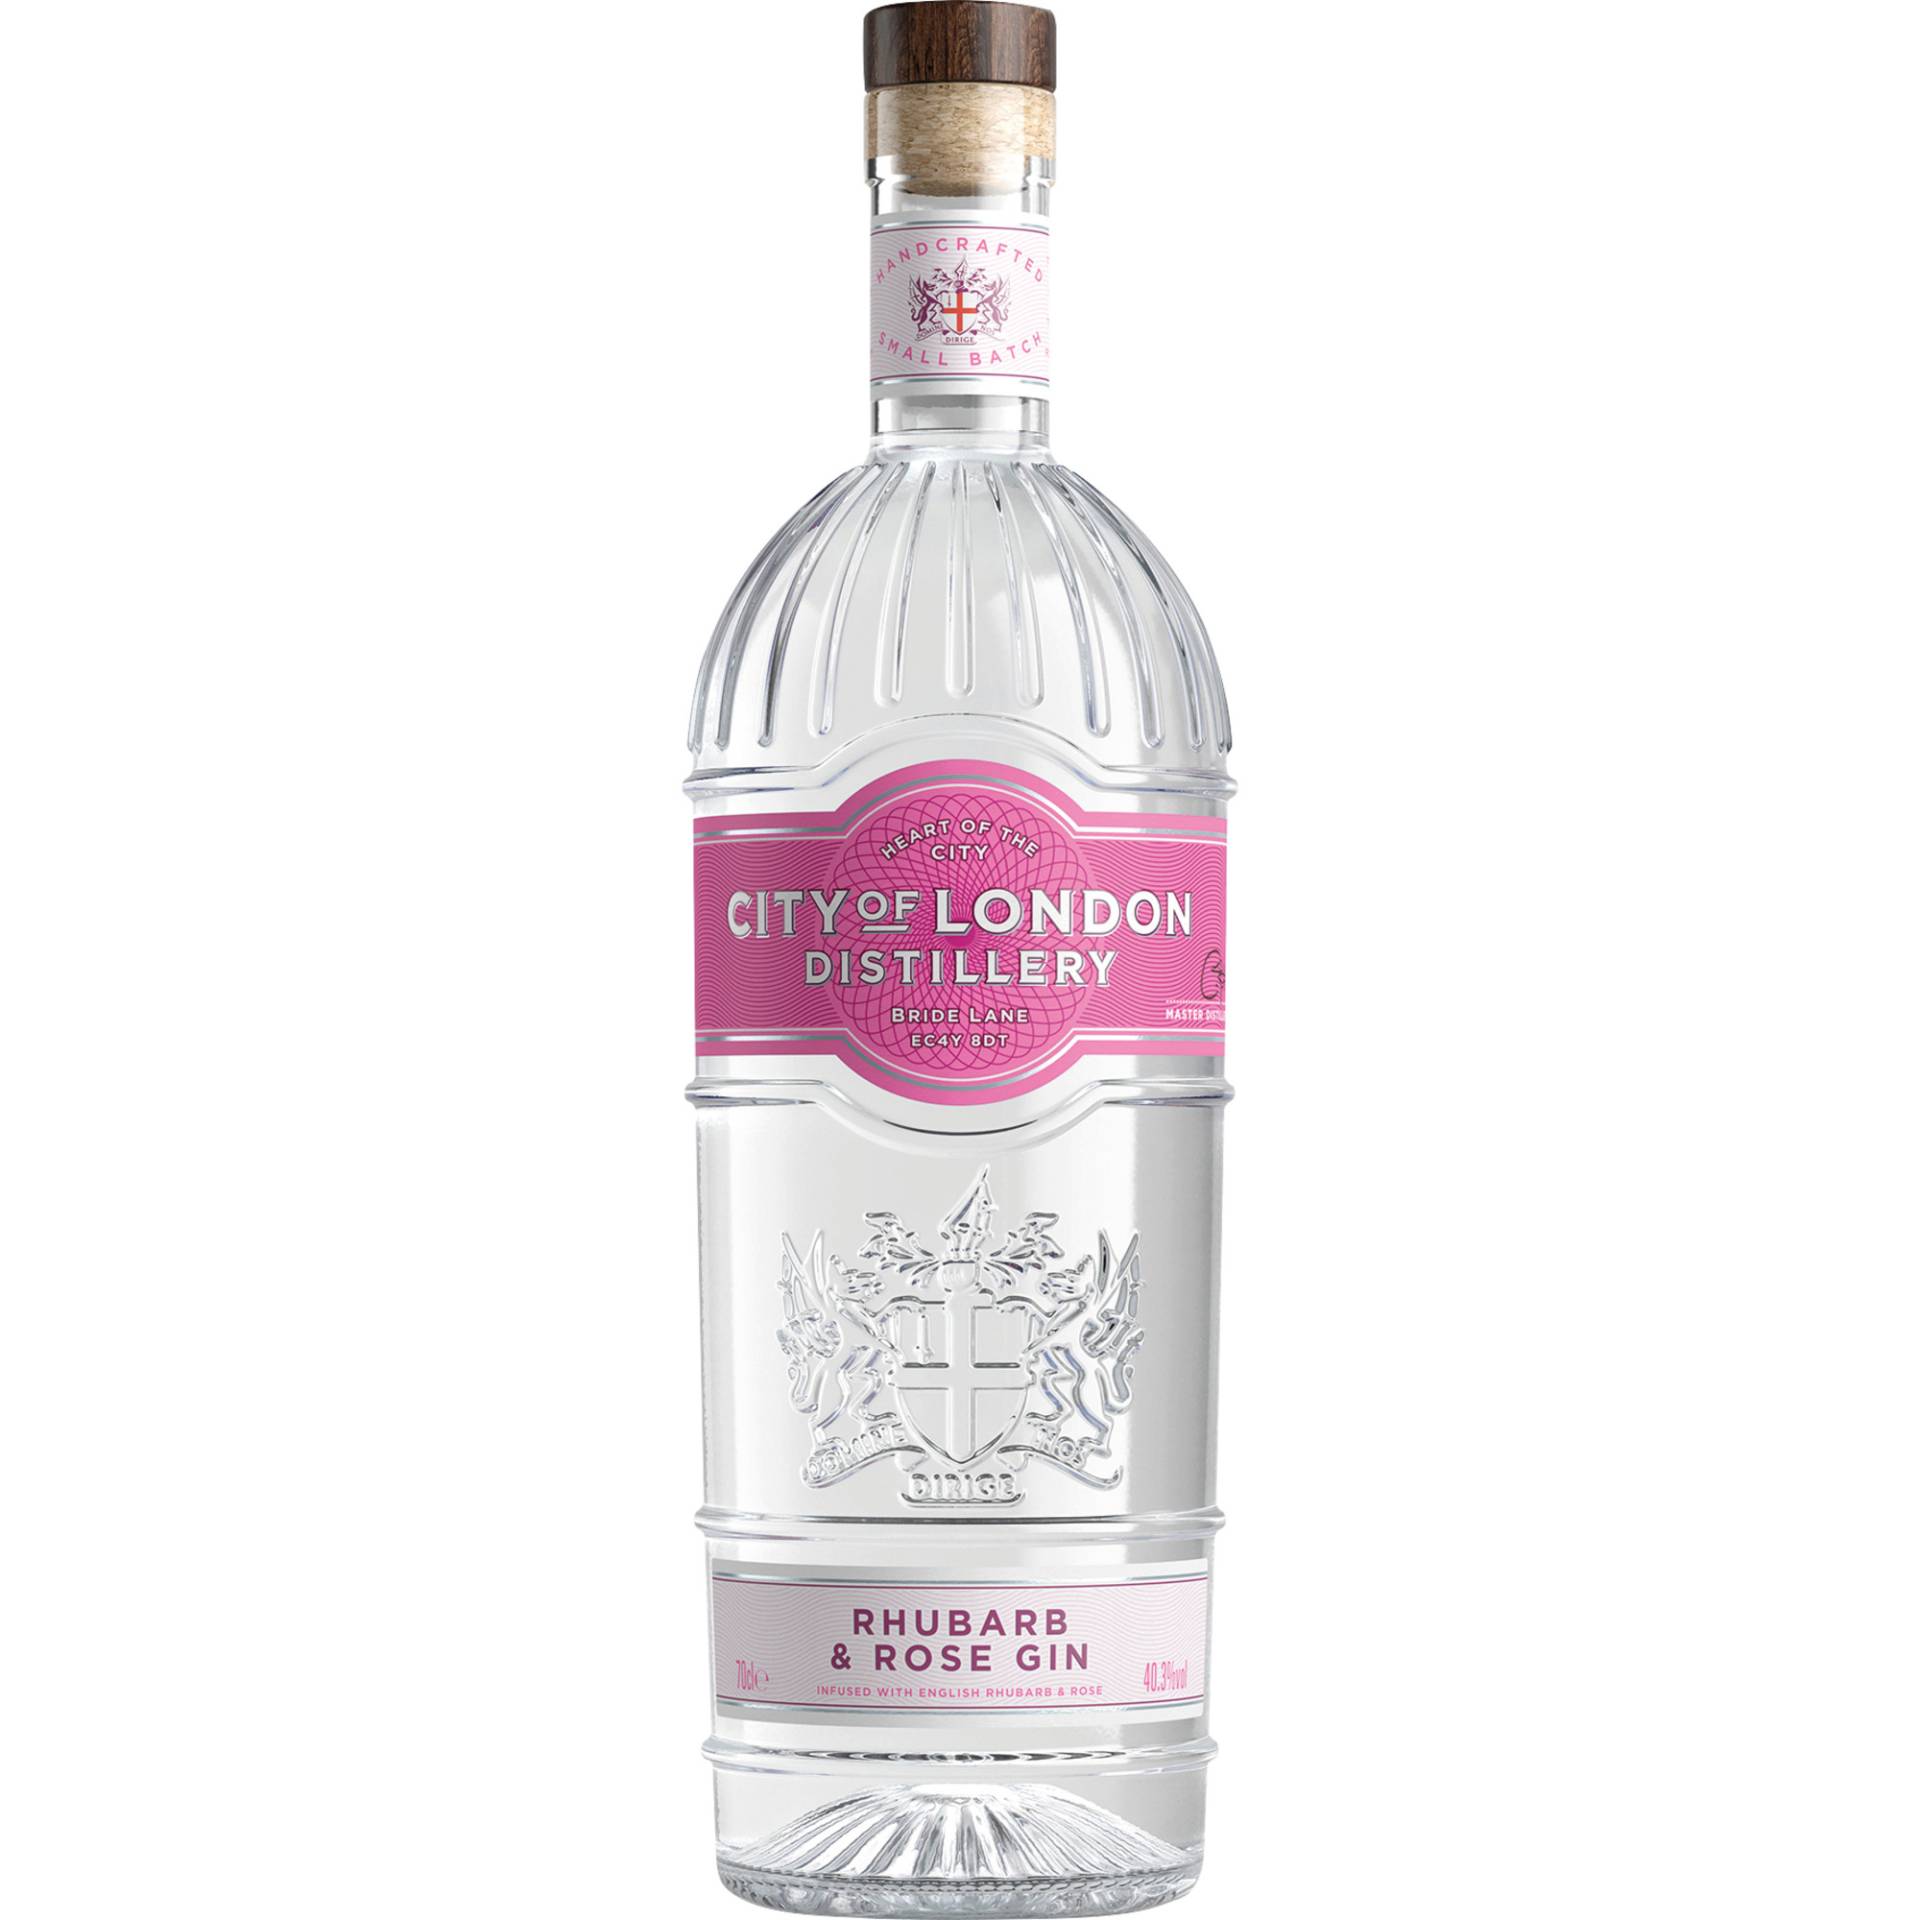 City of London Destillery Rhubarb & Rose Gin, 0,7l, 40,3%, Spirituosen von Halewood,W1W 5PA,London,Vereinigtes Königreich